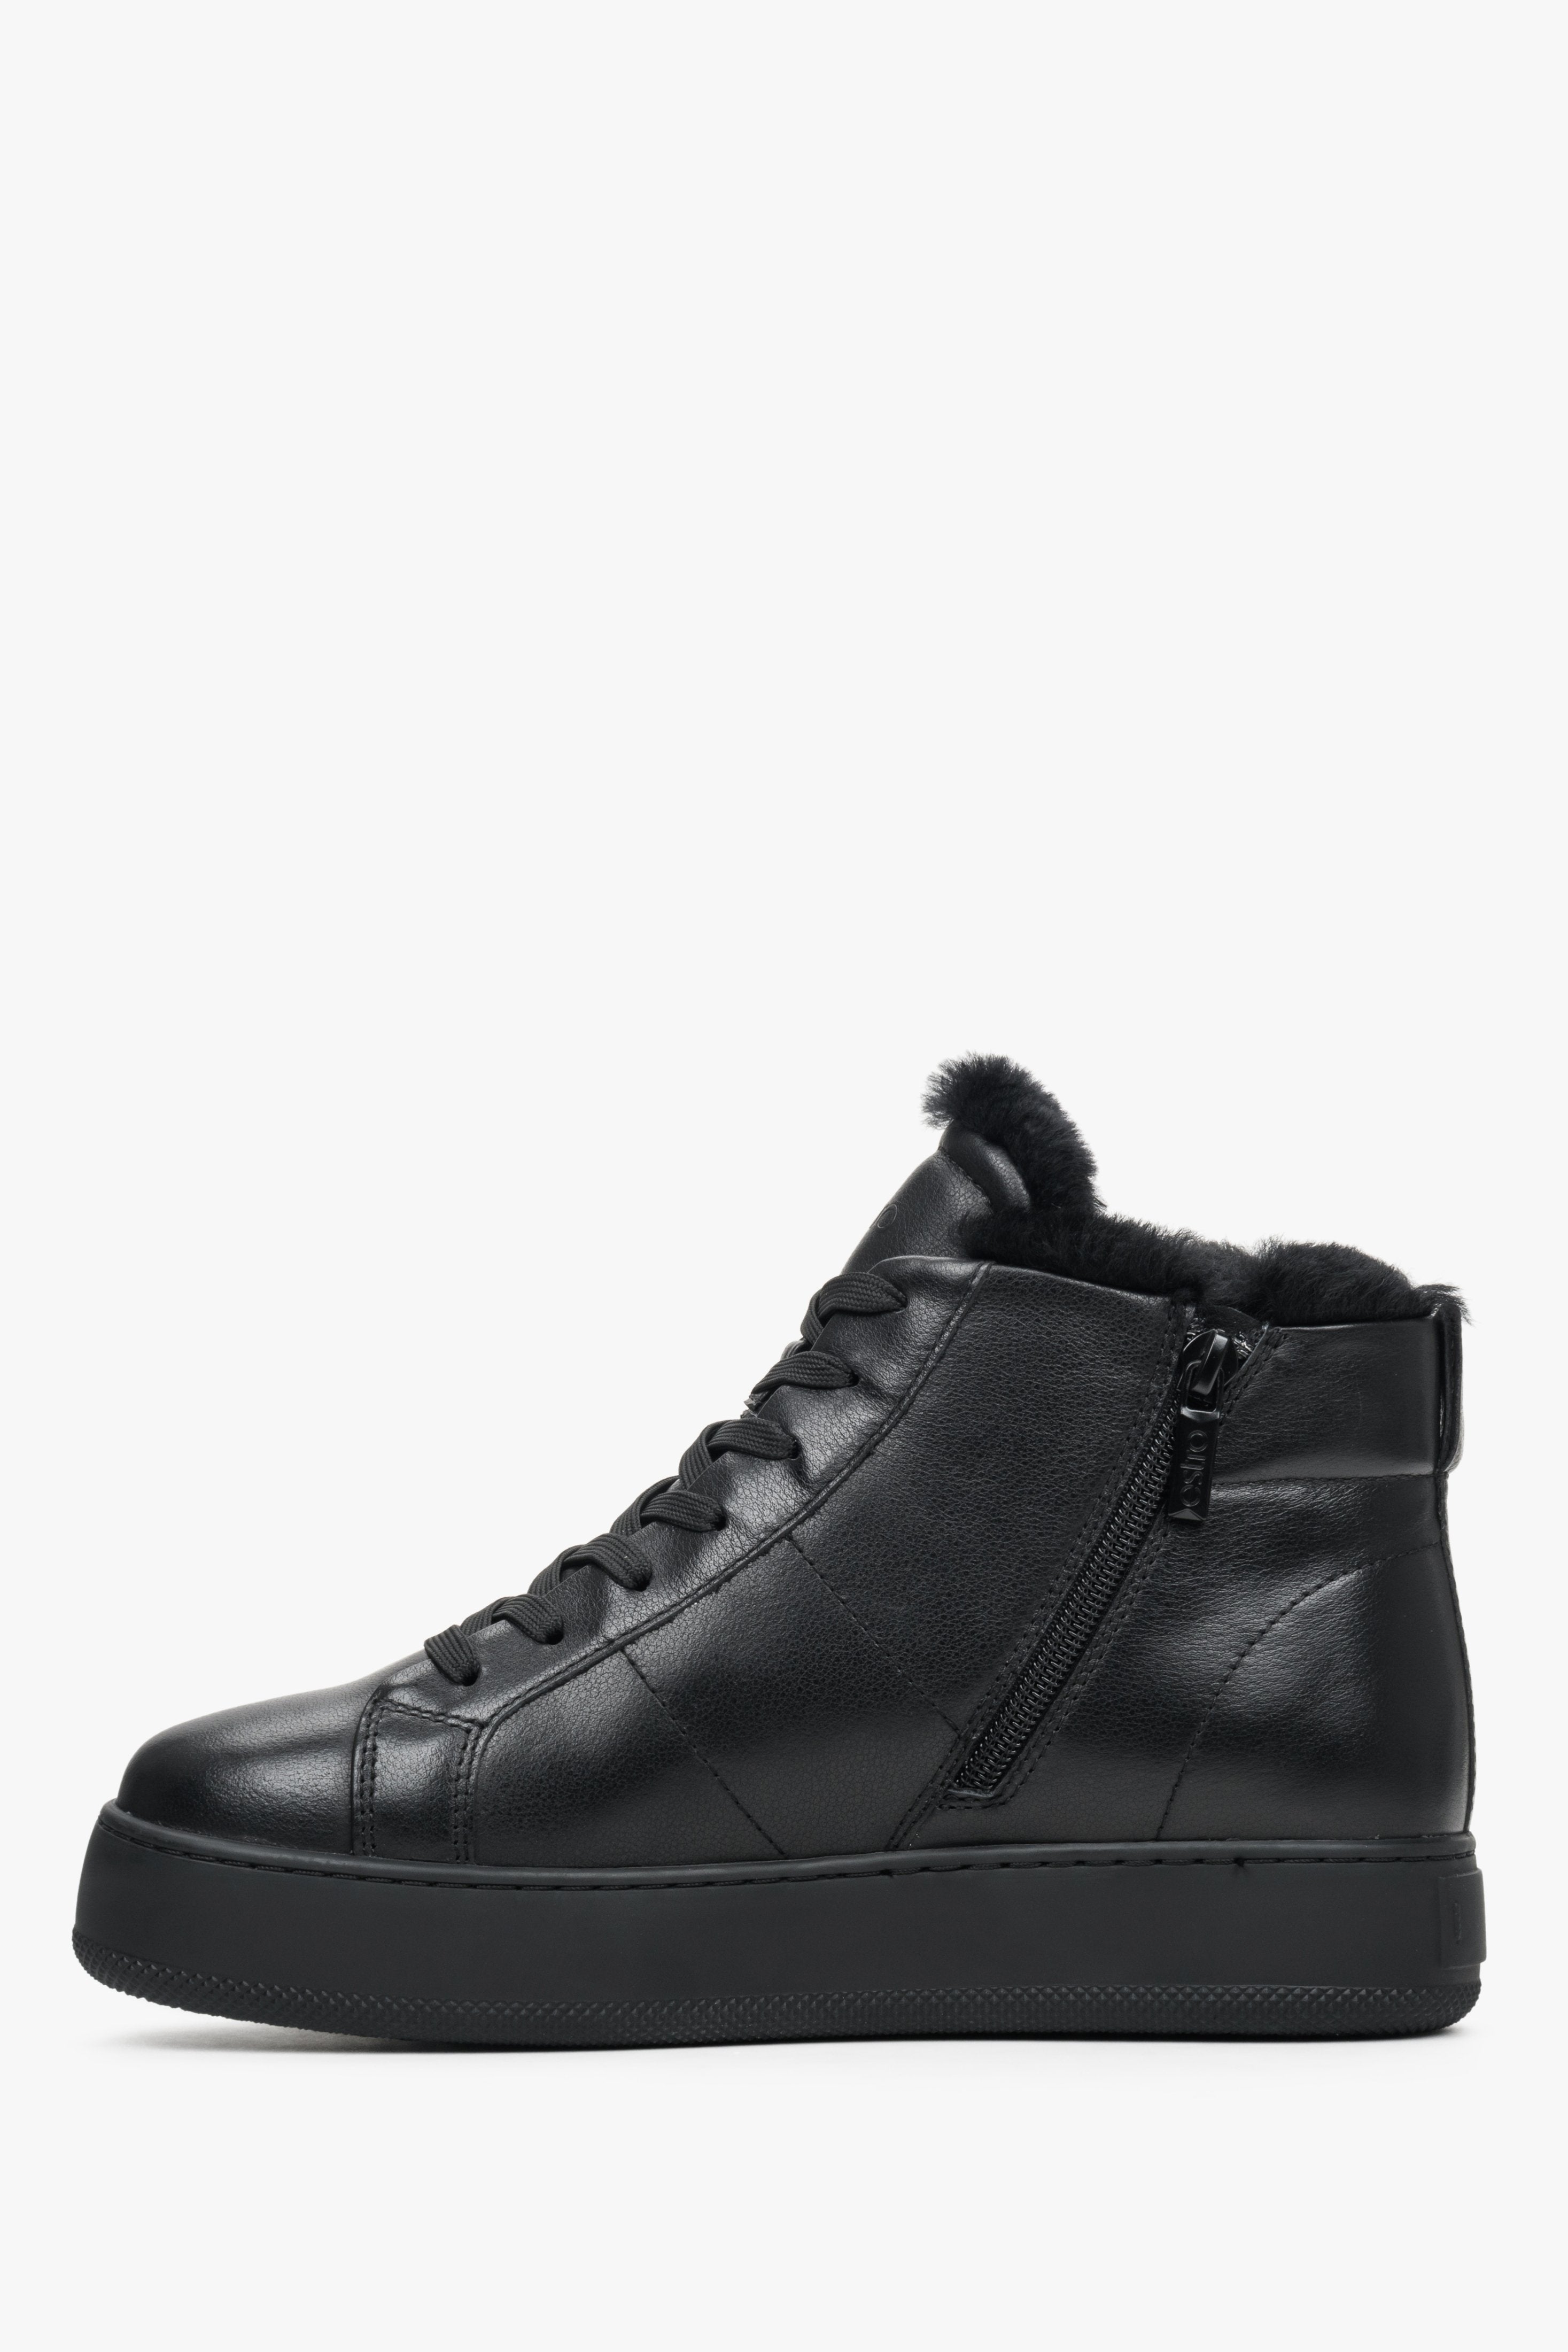 Ocieplane, zimowe sneakersy damskie Estro w kolorze czarnym - profil buta.